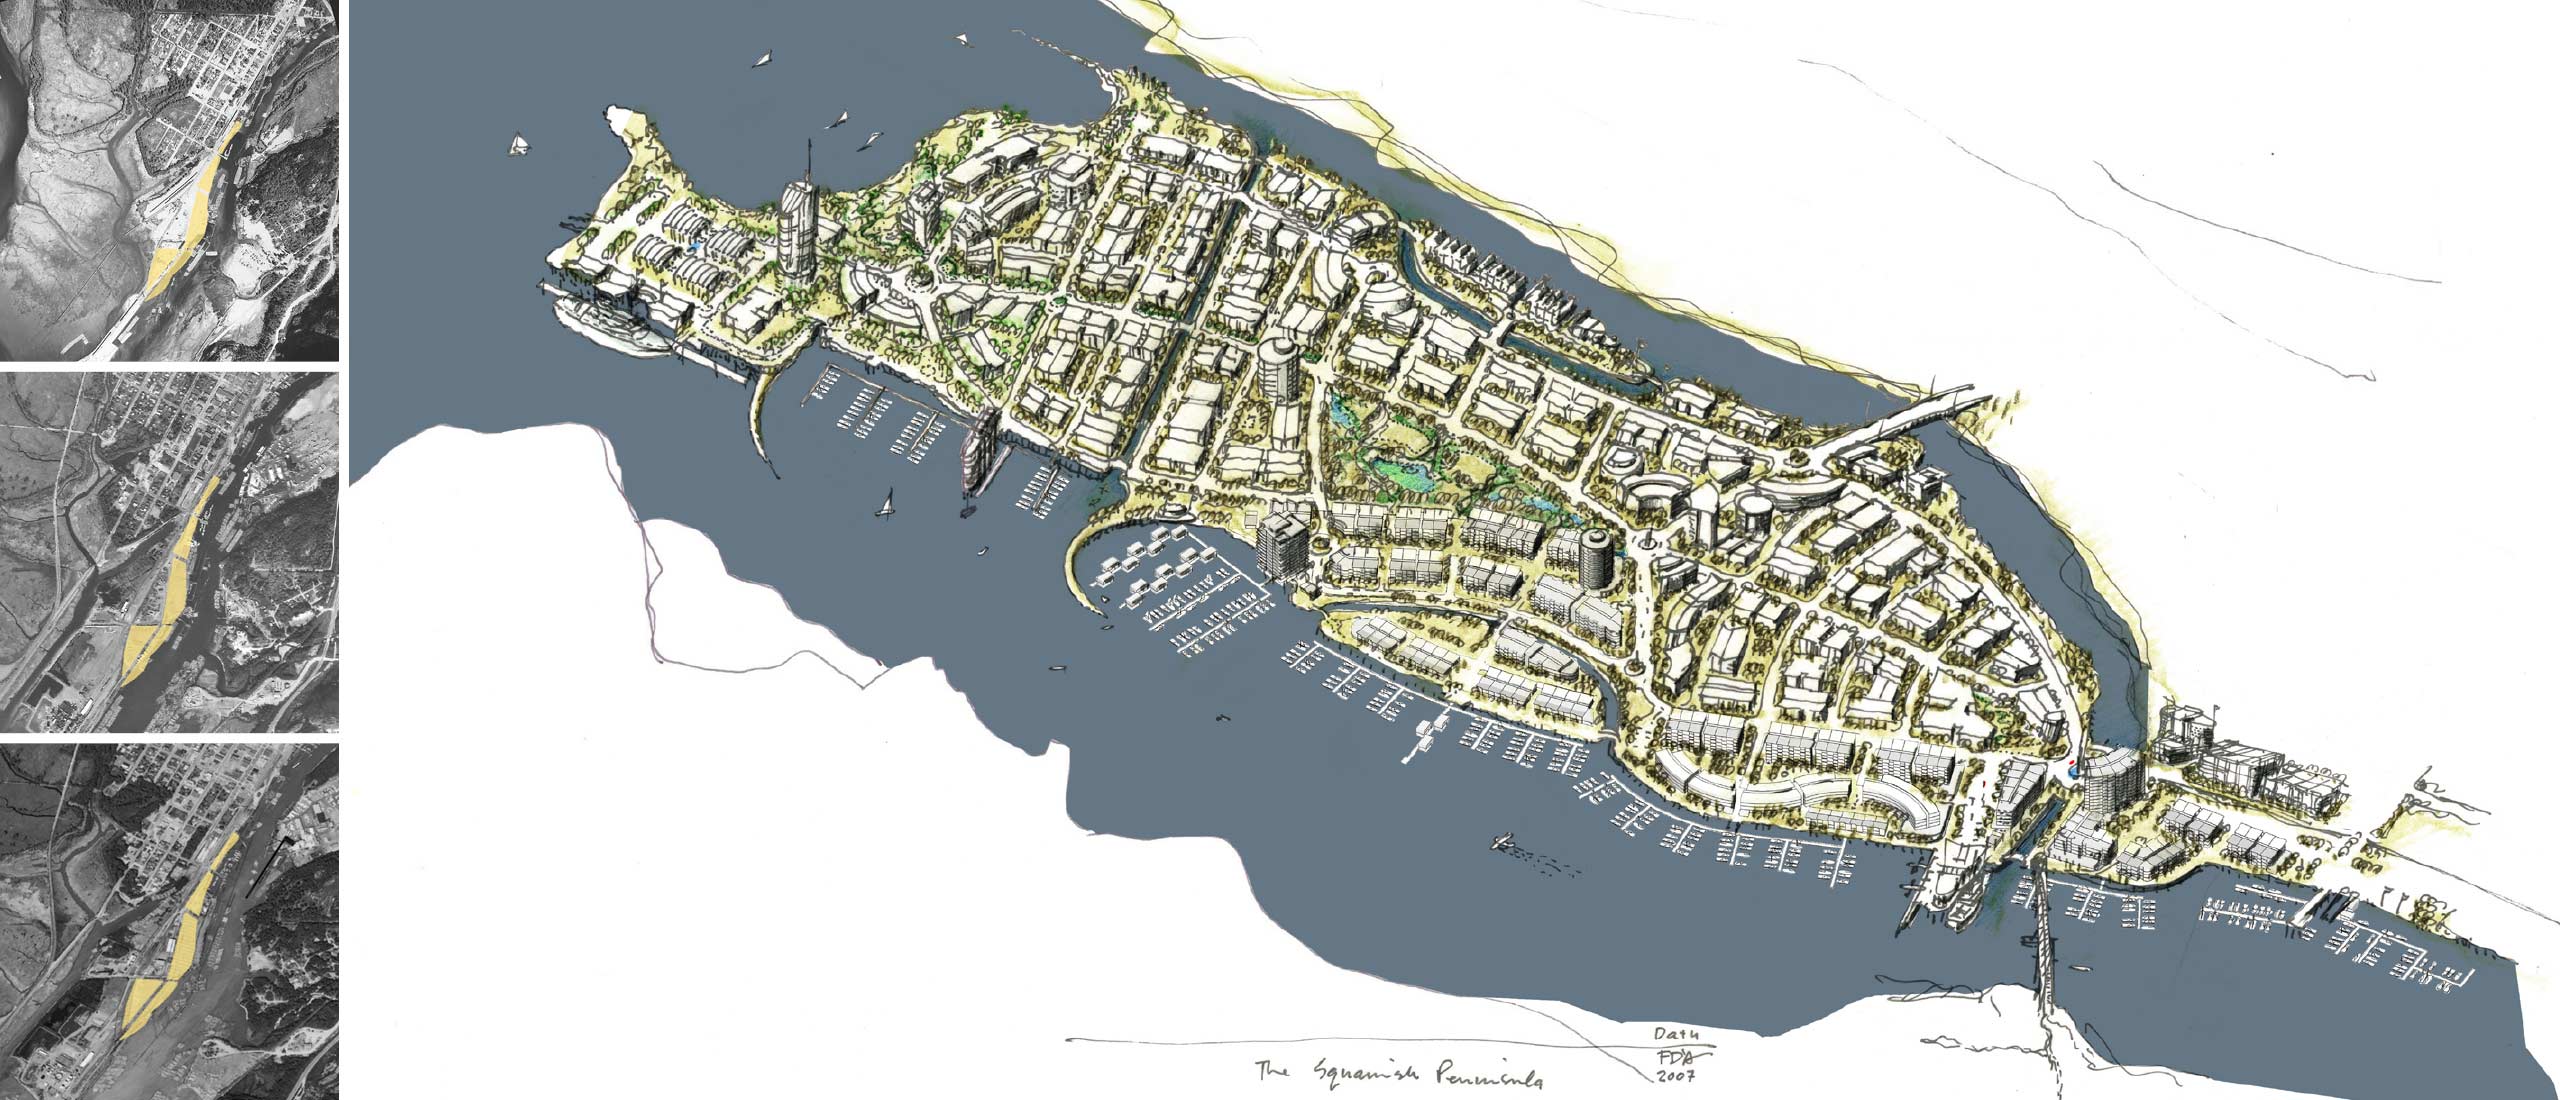 Squamish Waterfront Plan © DAU